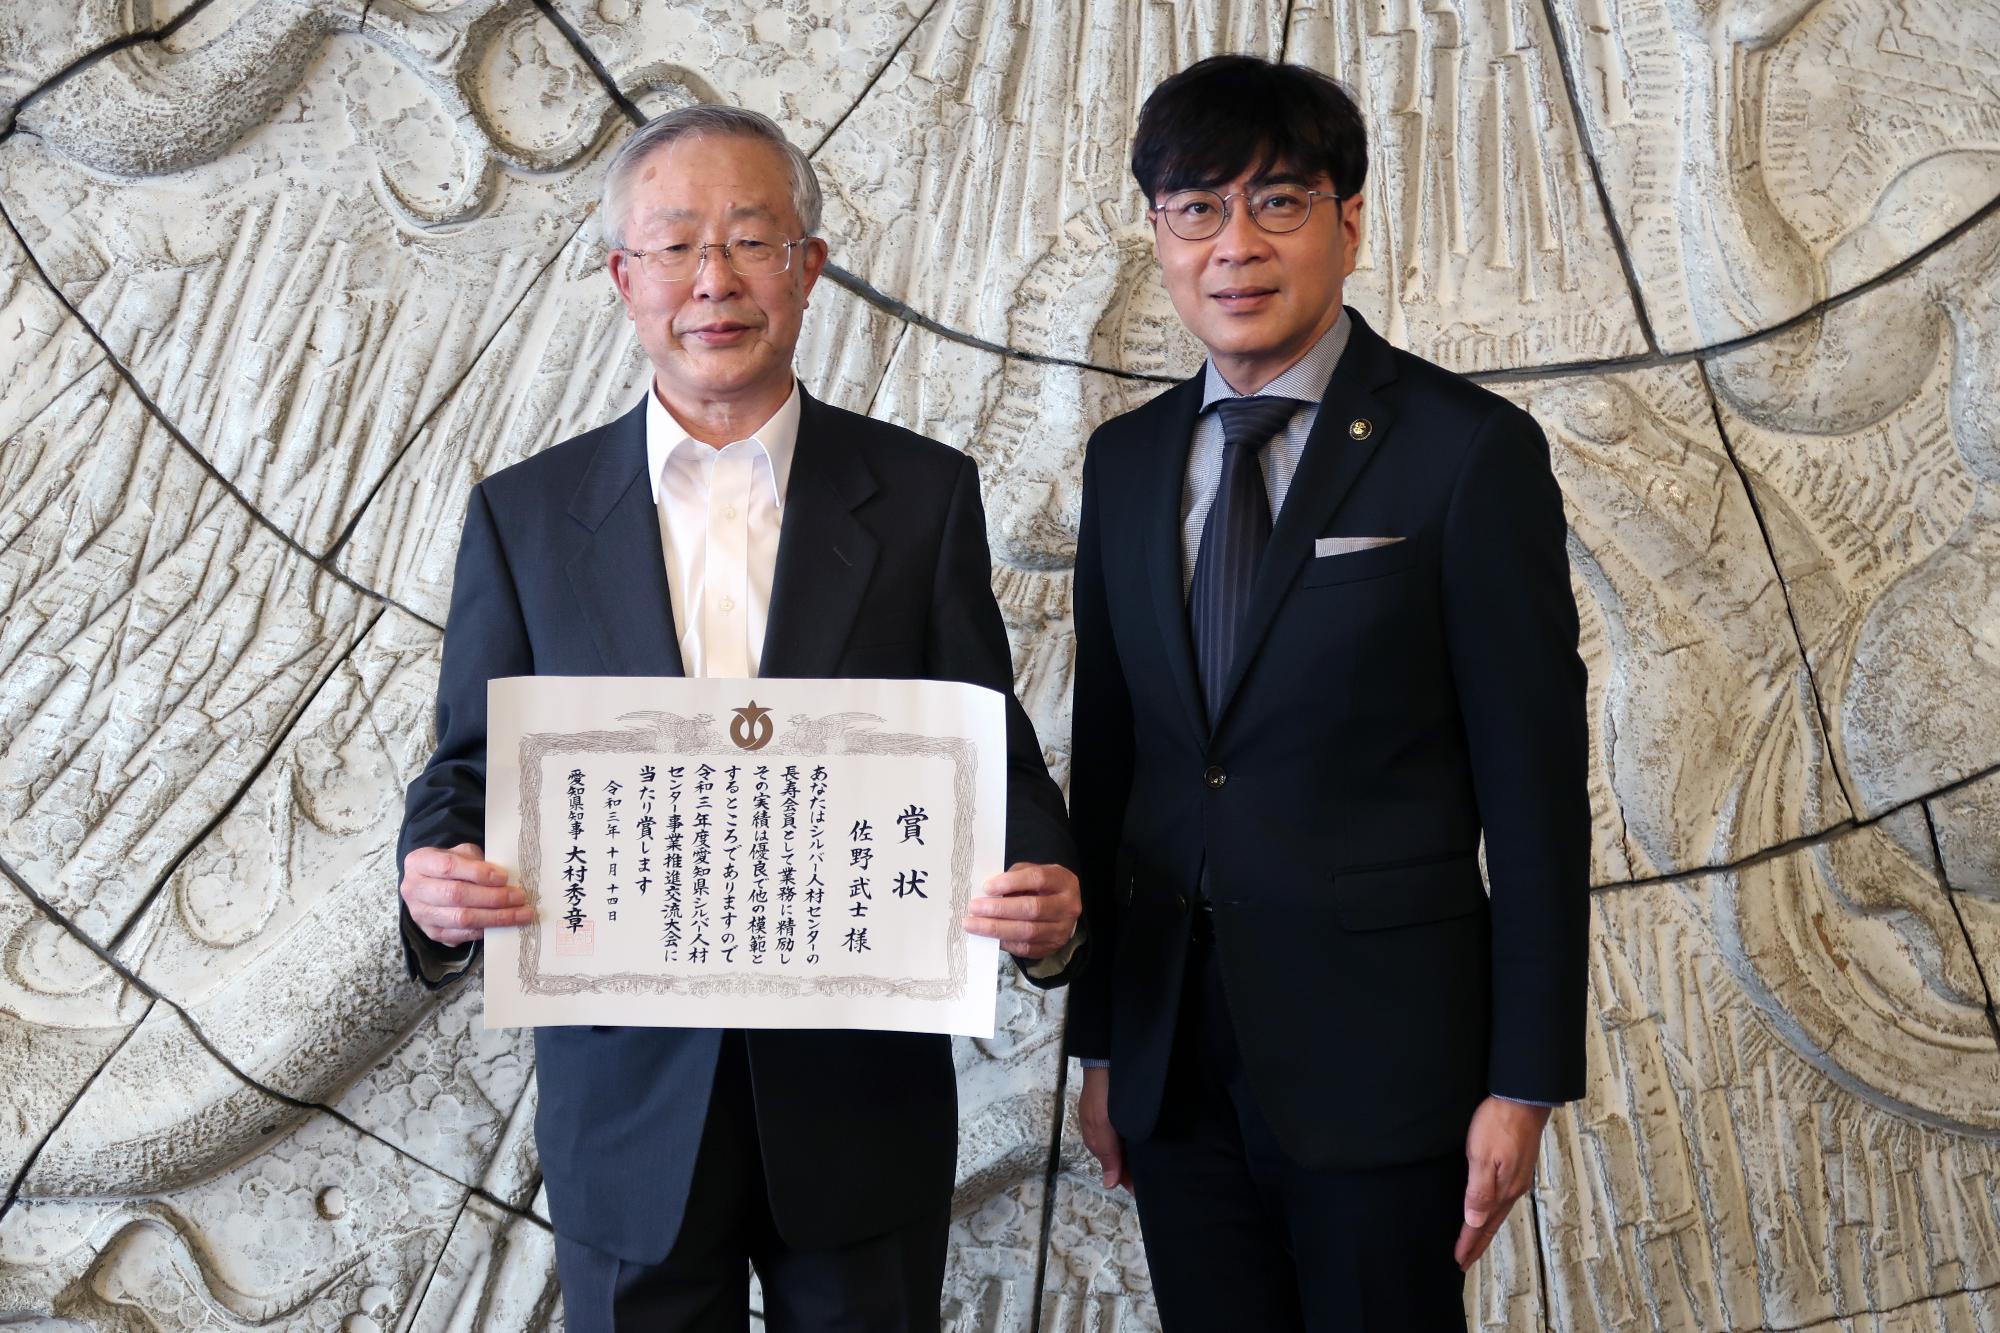 県知事表彰を受賞された佐野武士さんと記念撮影をする近藤市長